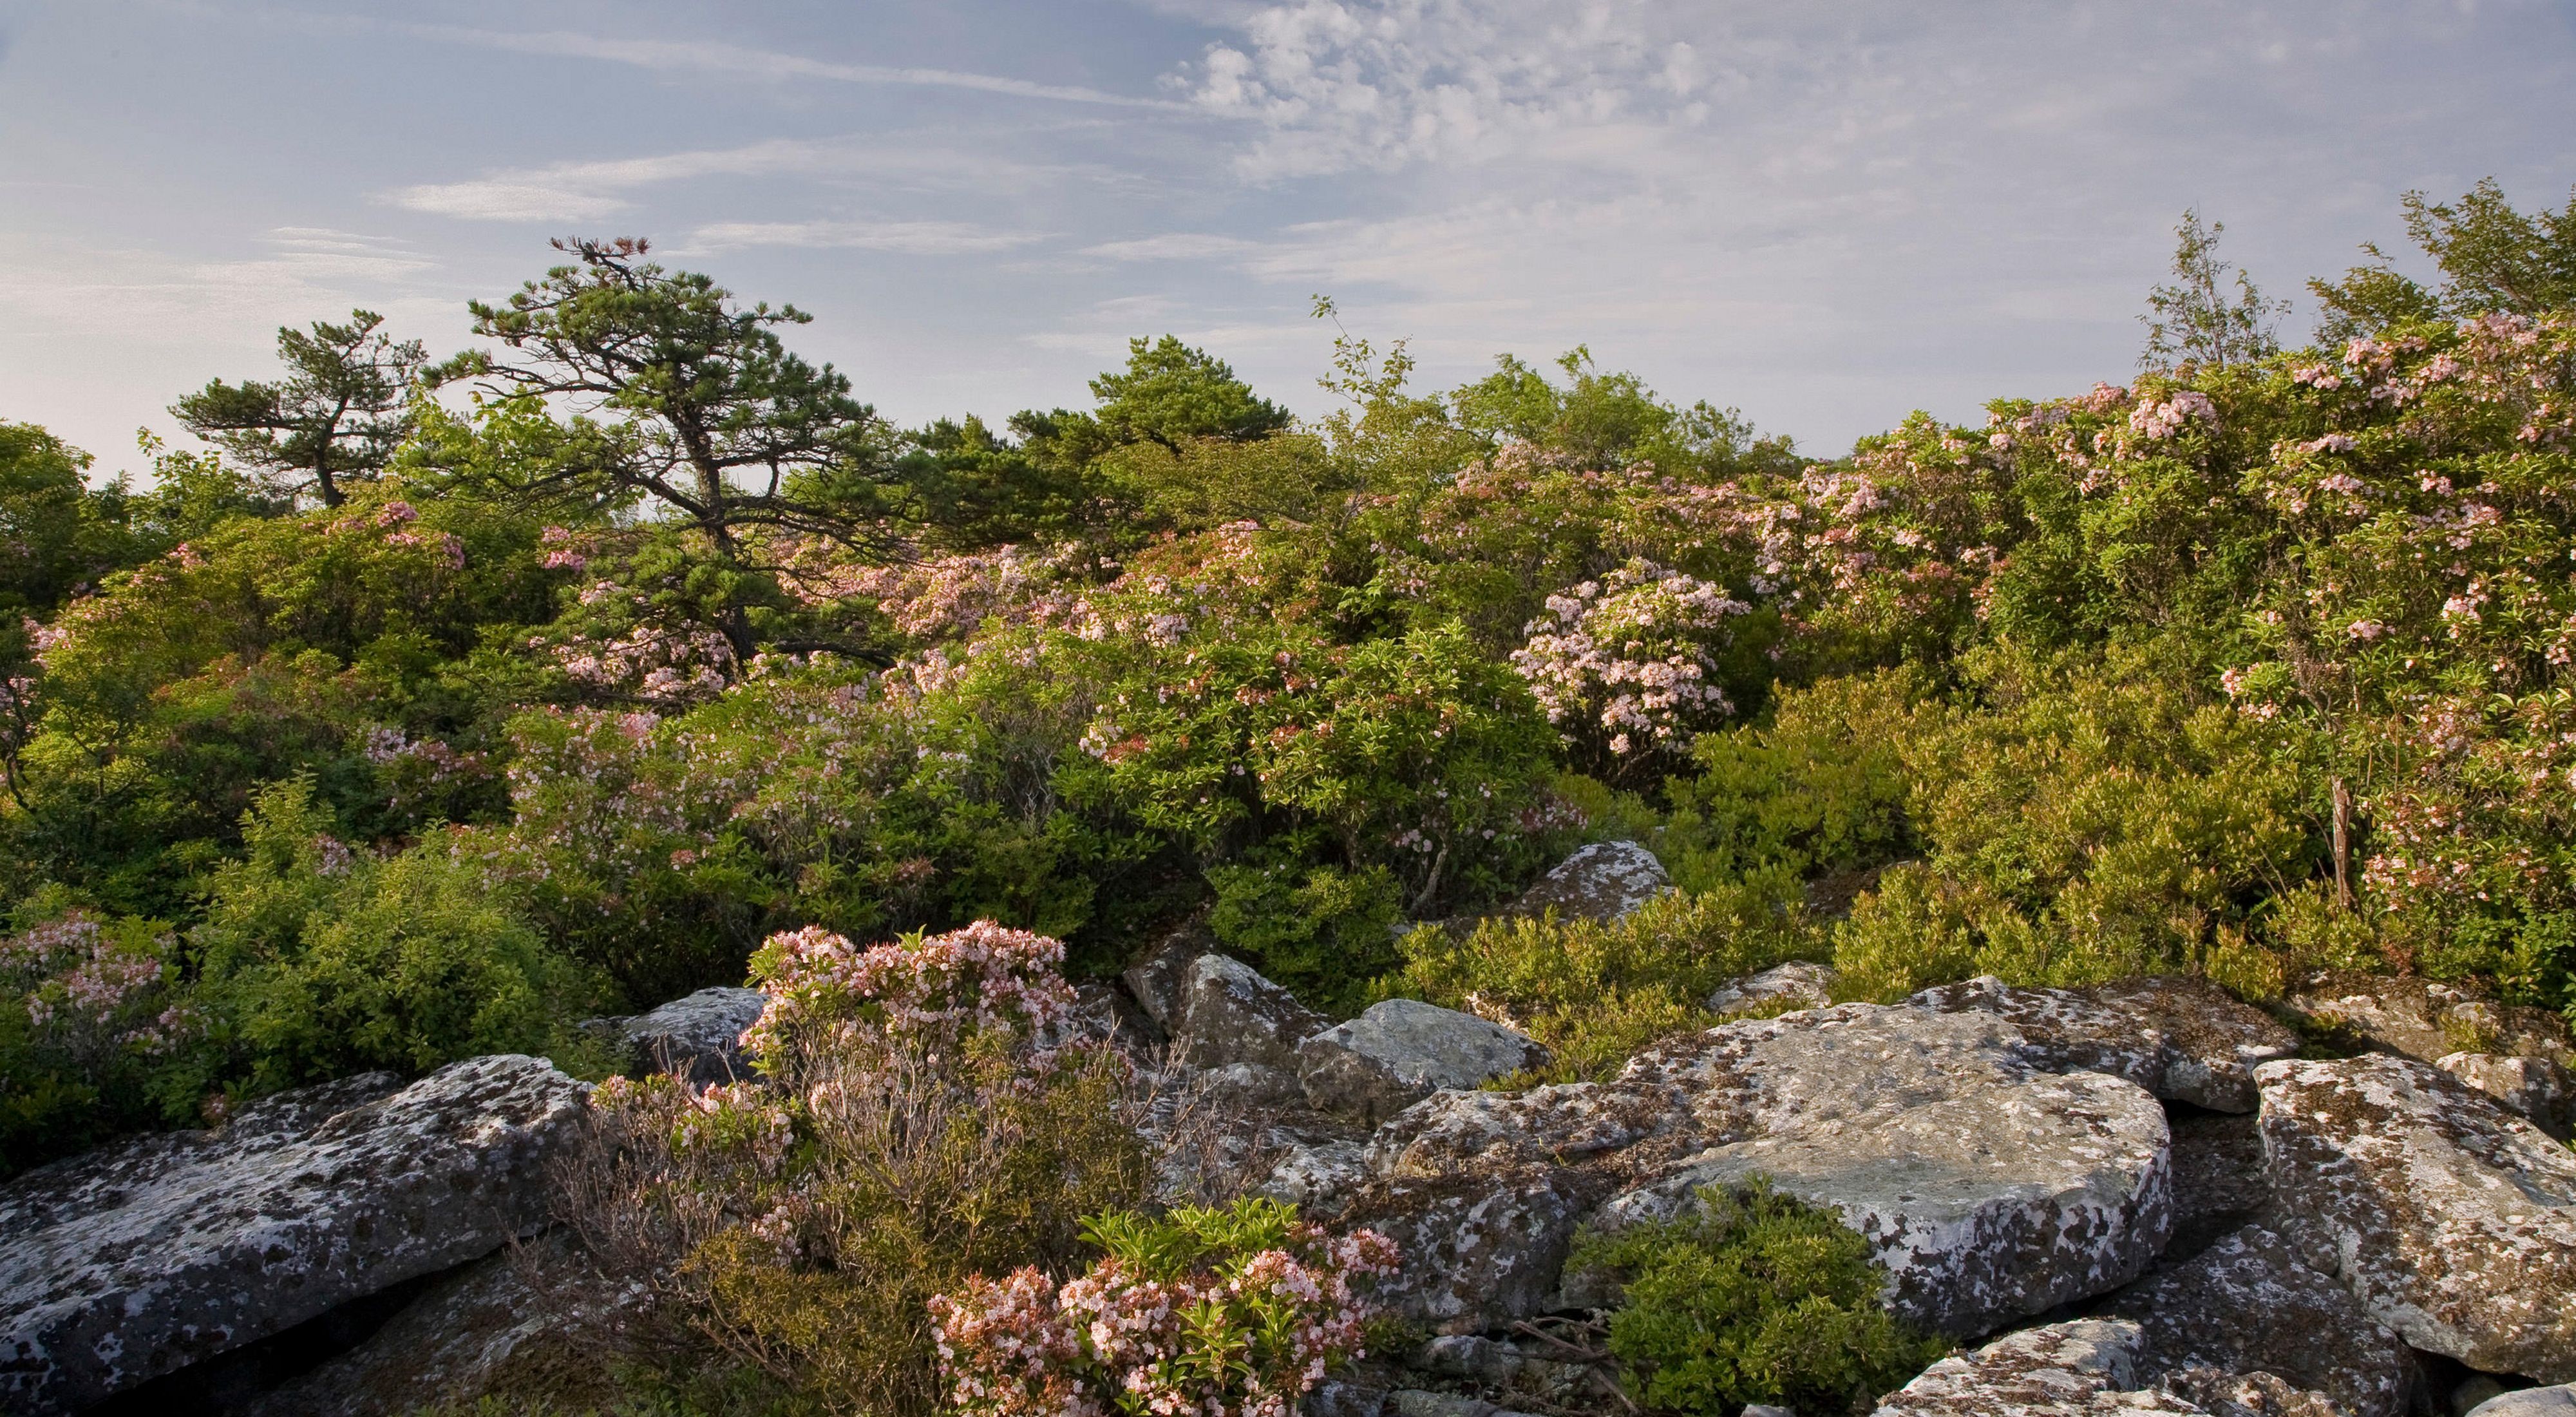 Mountain laurel flowers growing on rocky terrain.